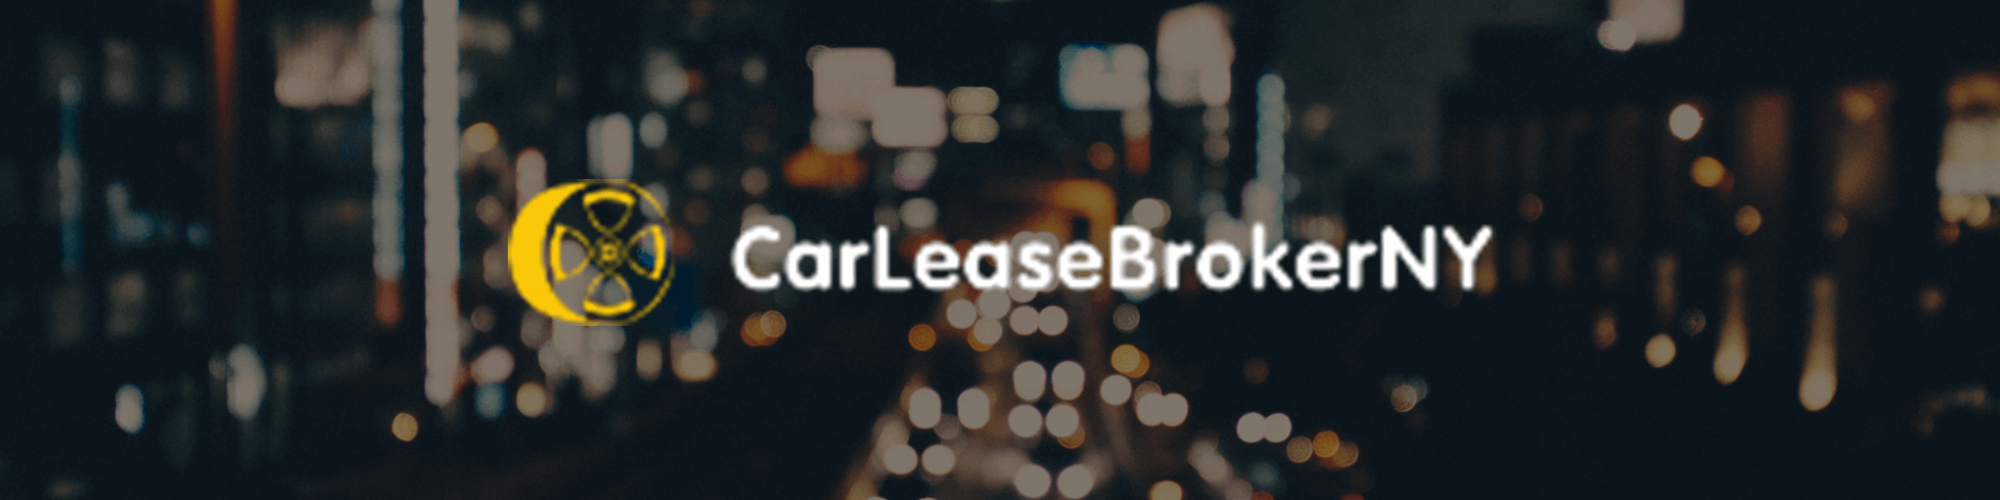 Car Lease Broker NY